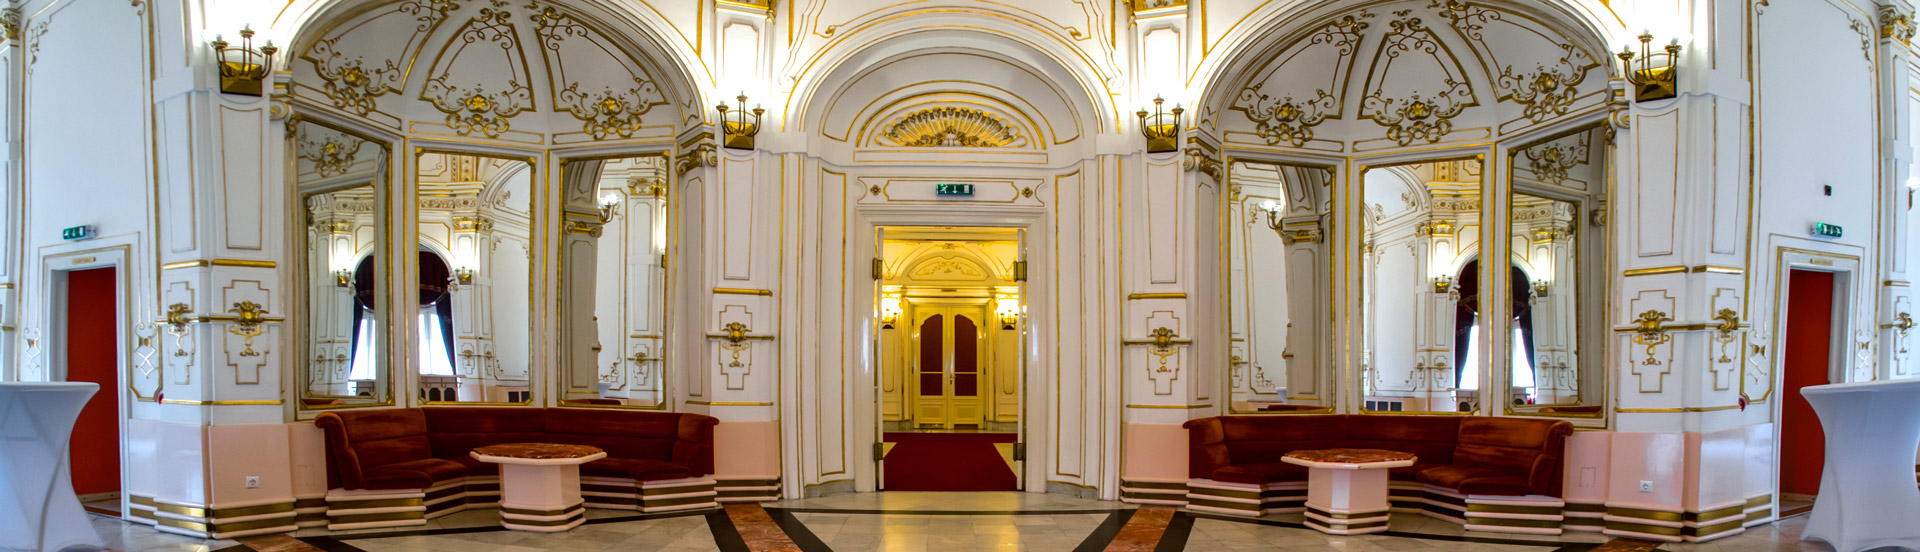 A Pécsi Nemzeti Színház belső képe az üvegezett folyosót mutatva